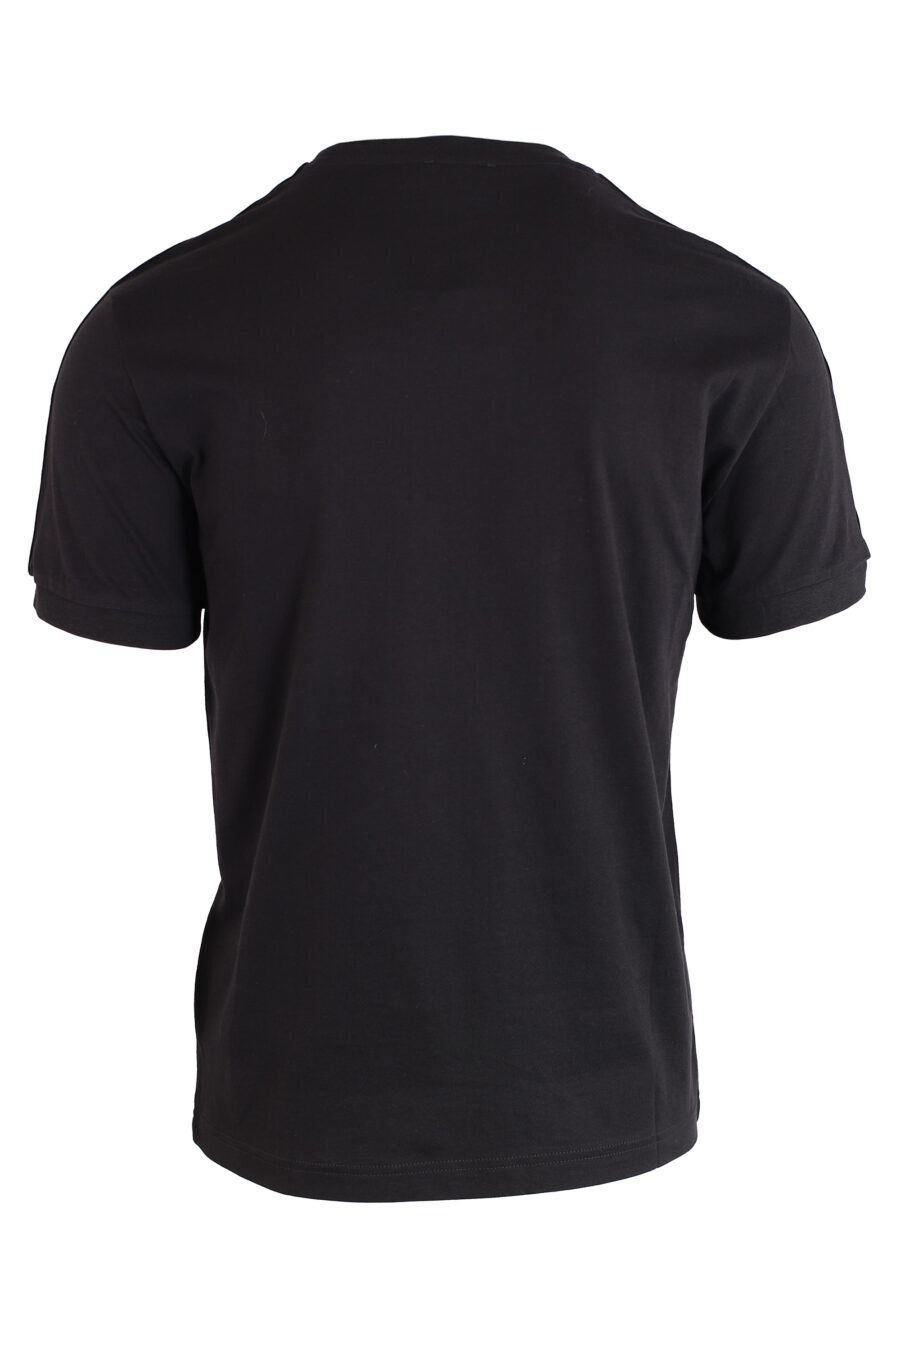 Camiseta negra con logo en cinta en hombros y minilogo blanco - IMG 3214